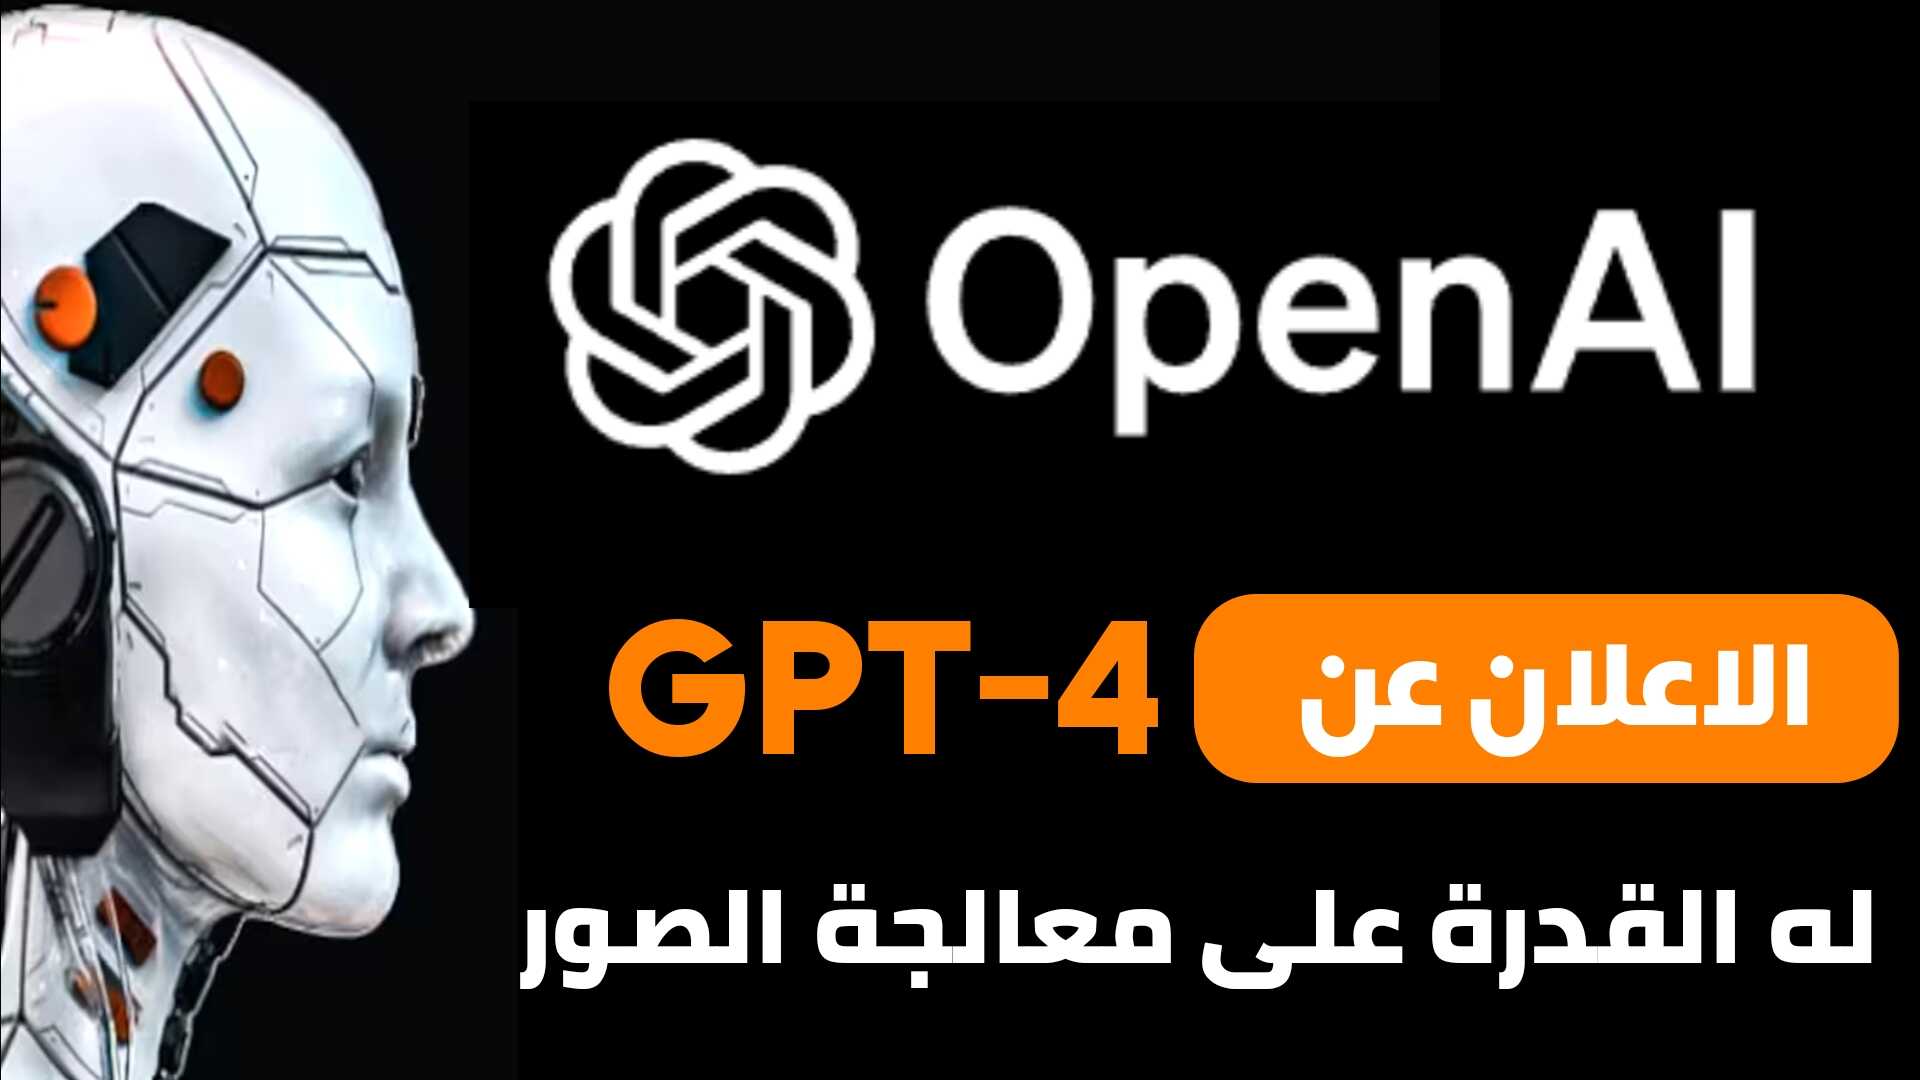 الاعلان عن GPT-4 من شركة OpenAI القادر على معالجة الصور